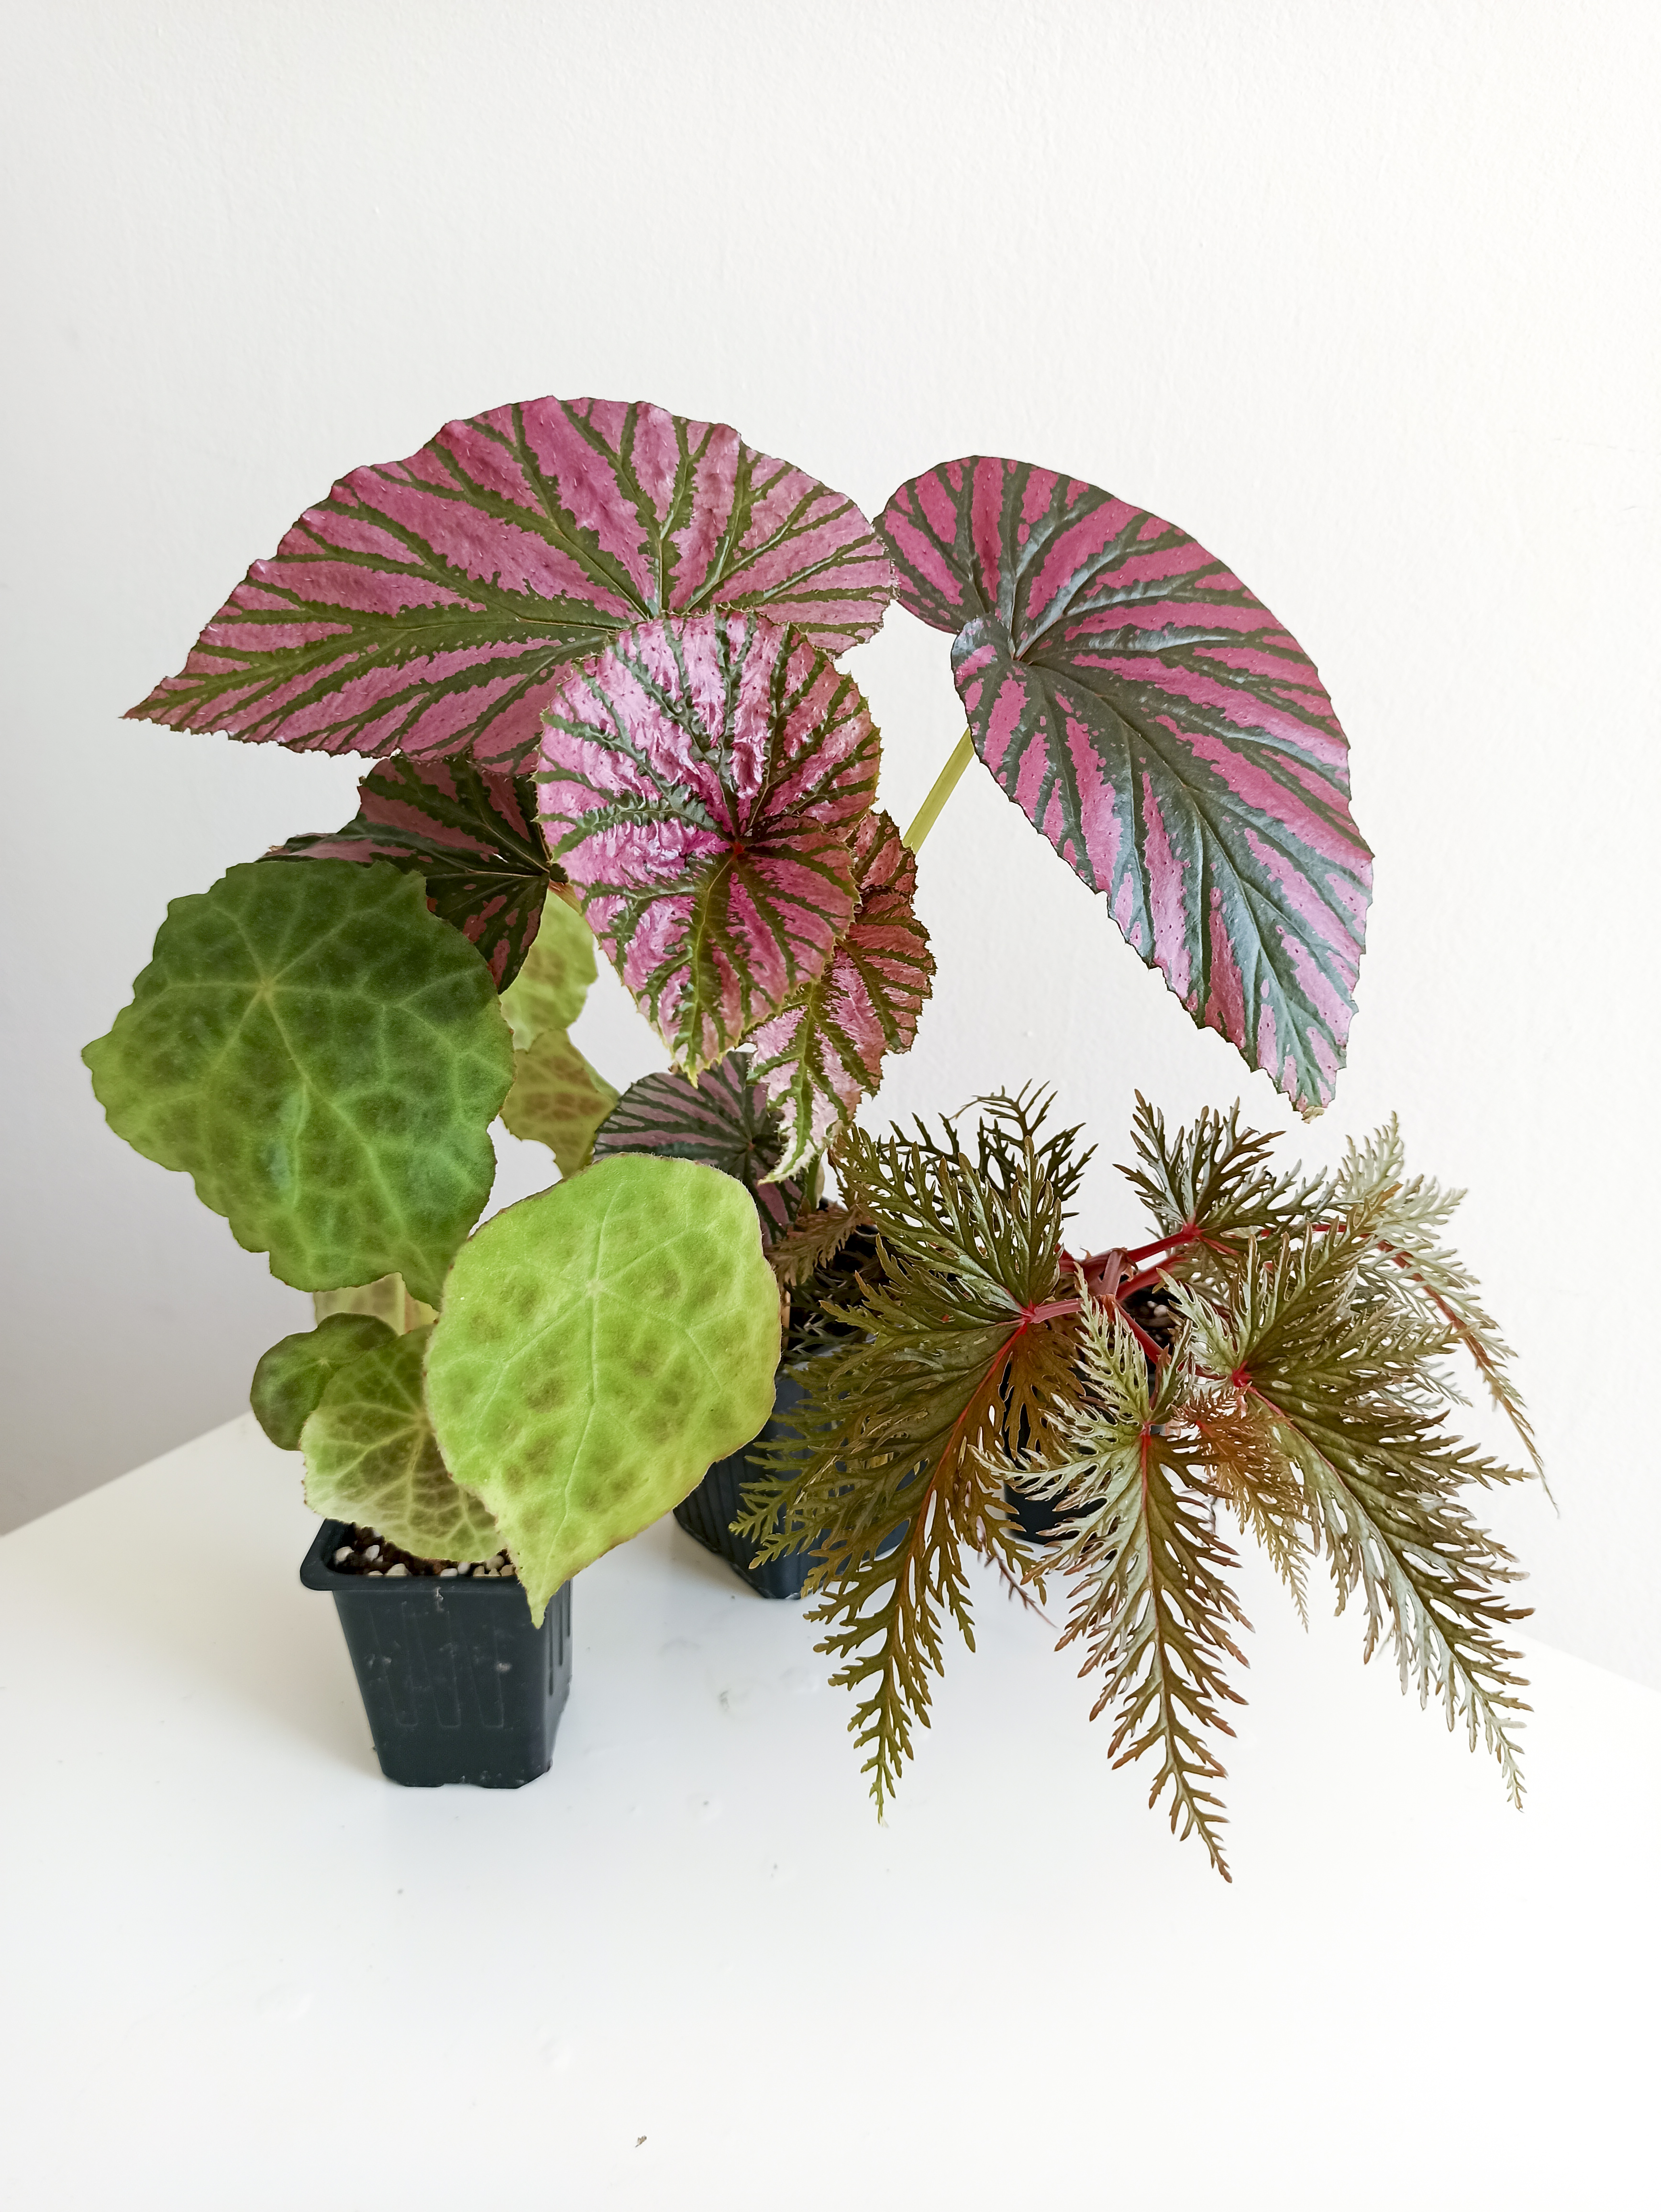 Begonias, las plantas con las hojas pintadas que Darth Vader tendría en  casa | Estilo de vida | EL PAÍS